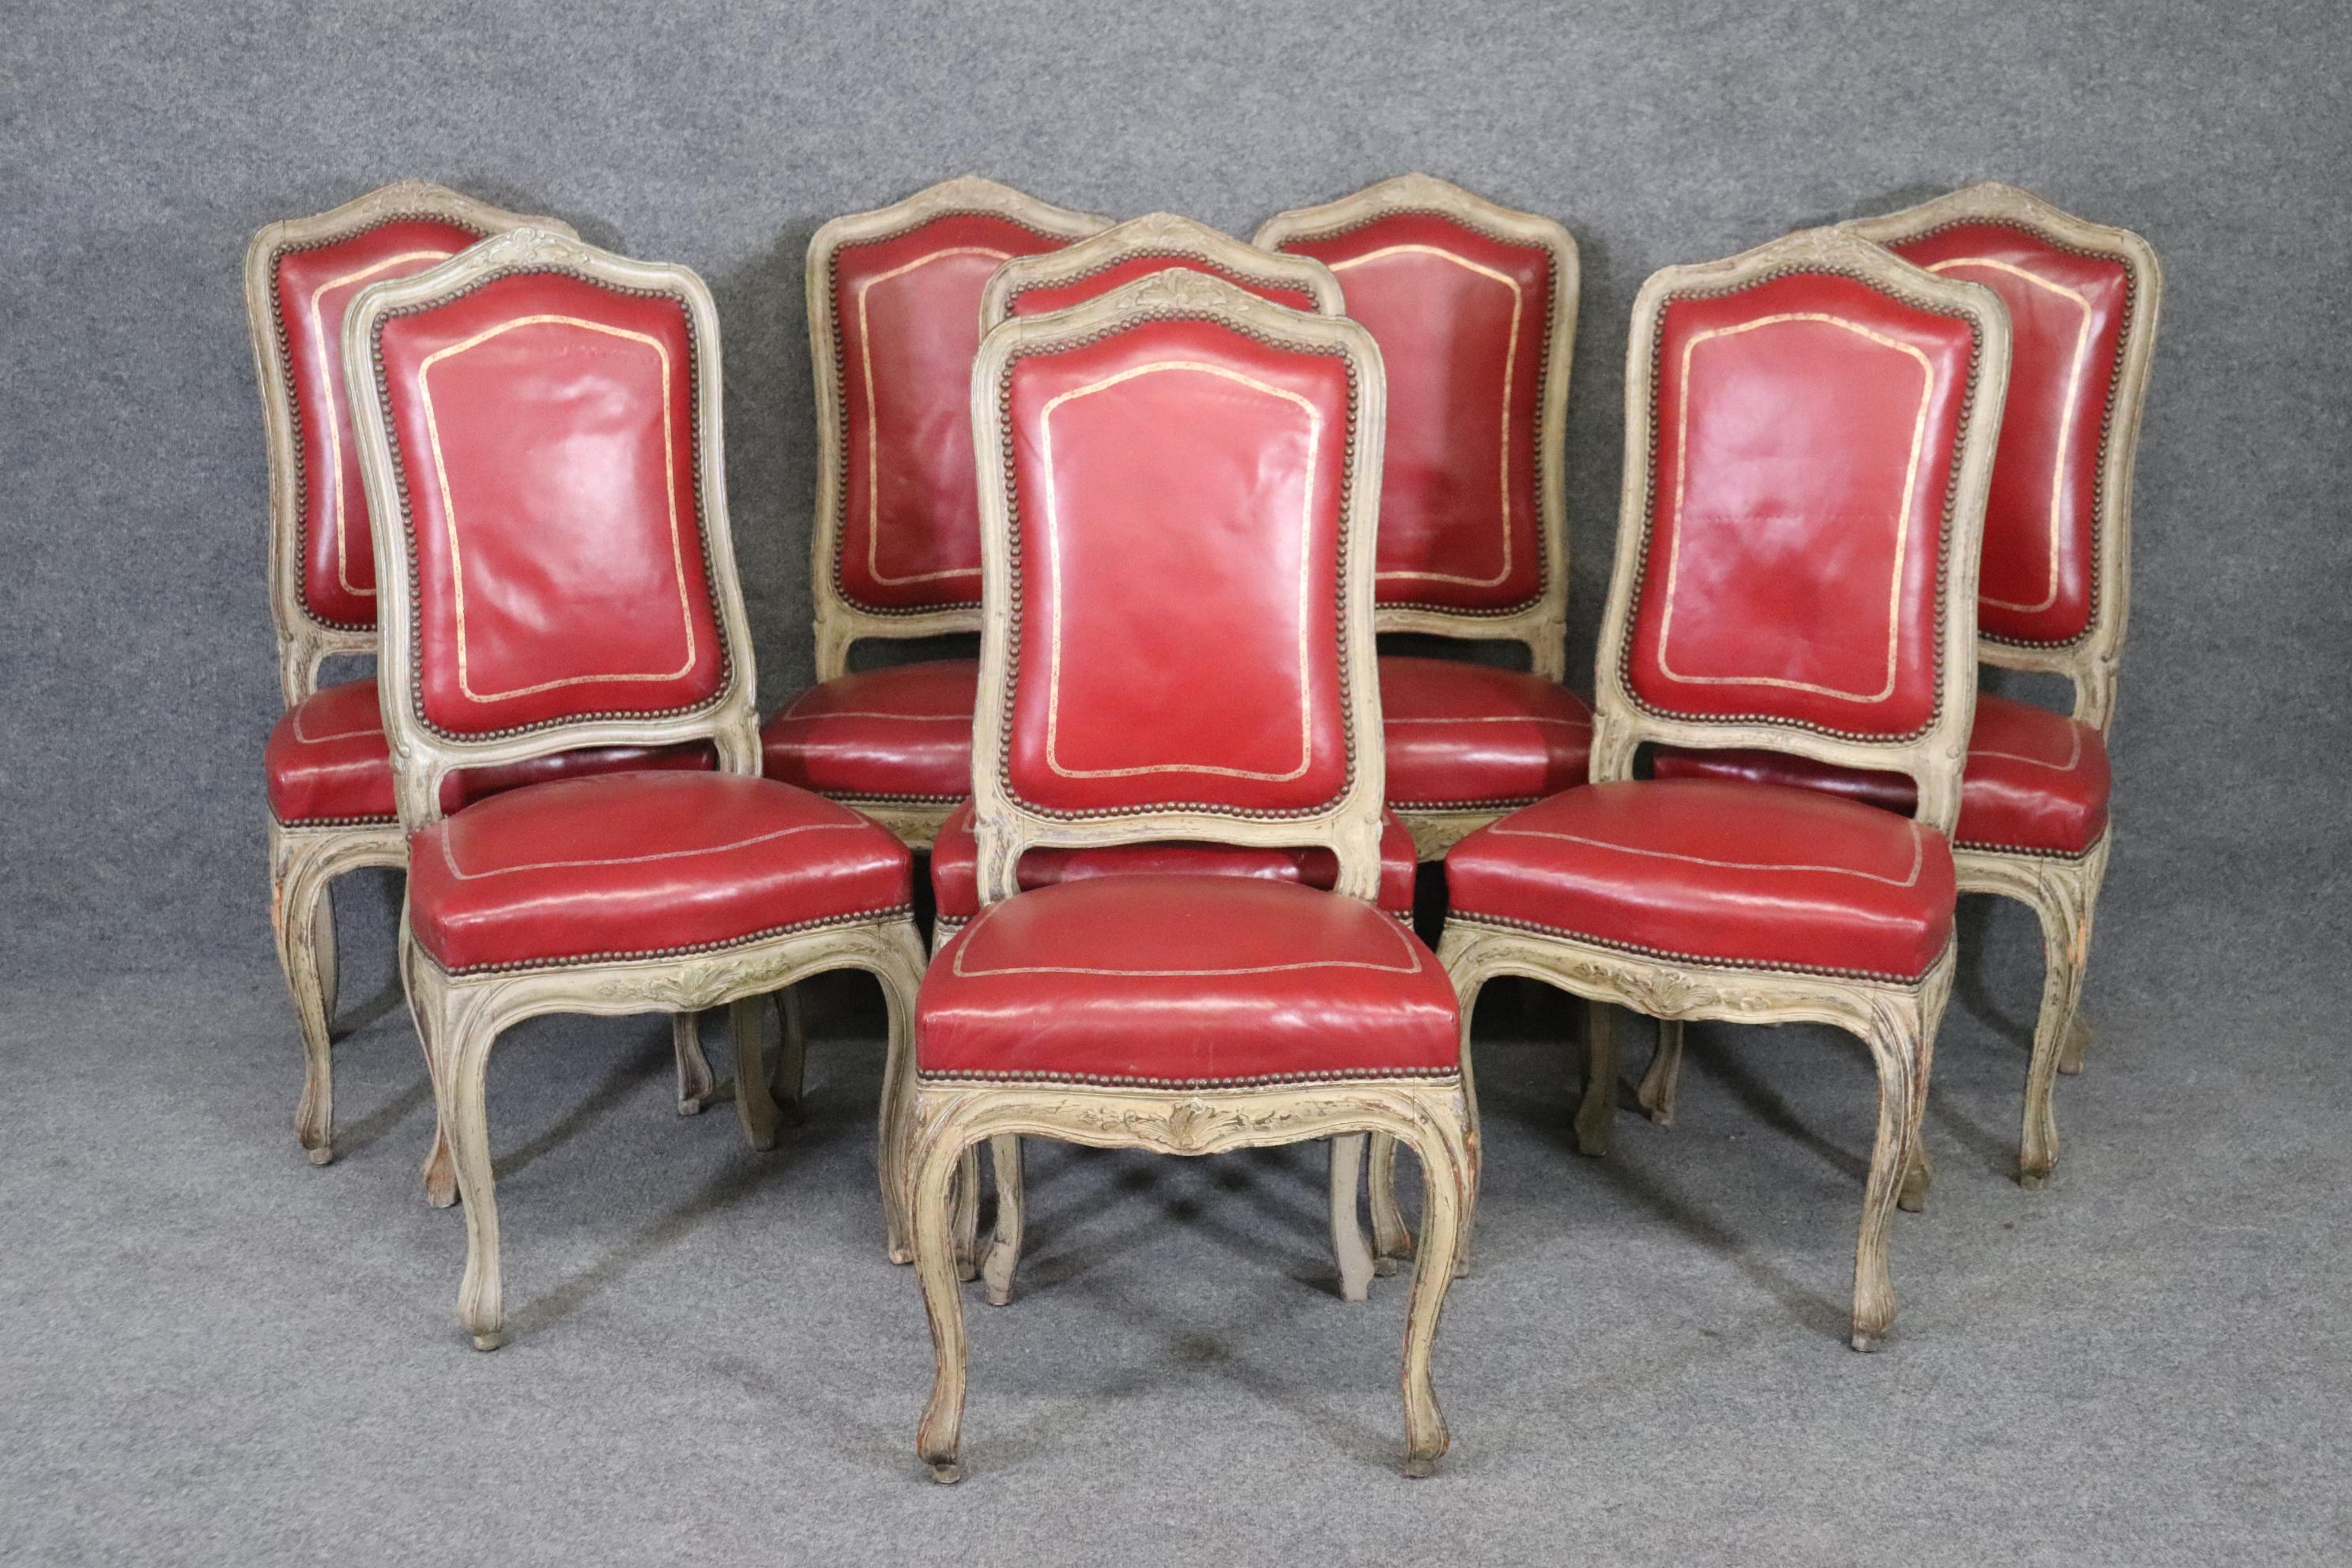 Dies ist eine sehr einzigartige Reihe von 8 Französisch-gefertigten 1920-30er Jahre Ära Esszimmerstühle in einem antiquewhite lackiert Finish mit leuchtend lippenstiftrot Leder mit Gold gefüttert Leder. Das geprägte Leder verleiht einem ansonsten